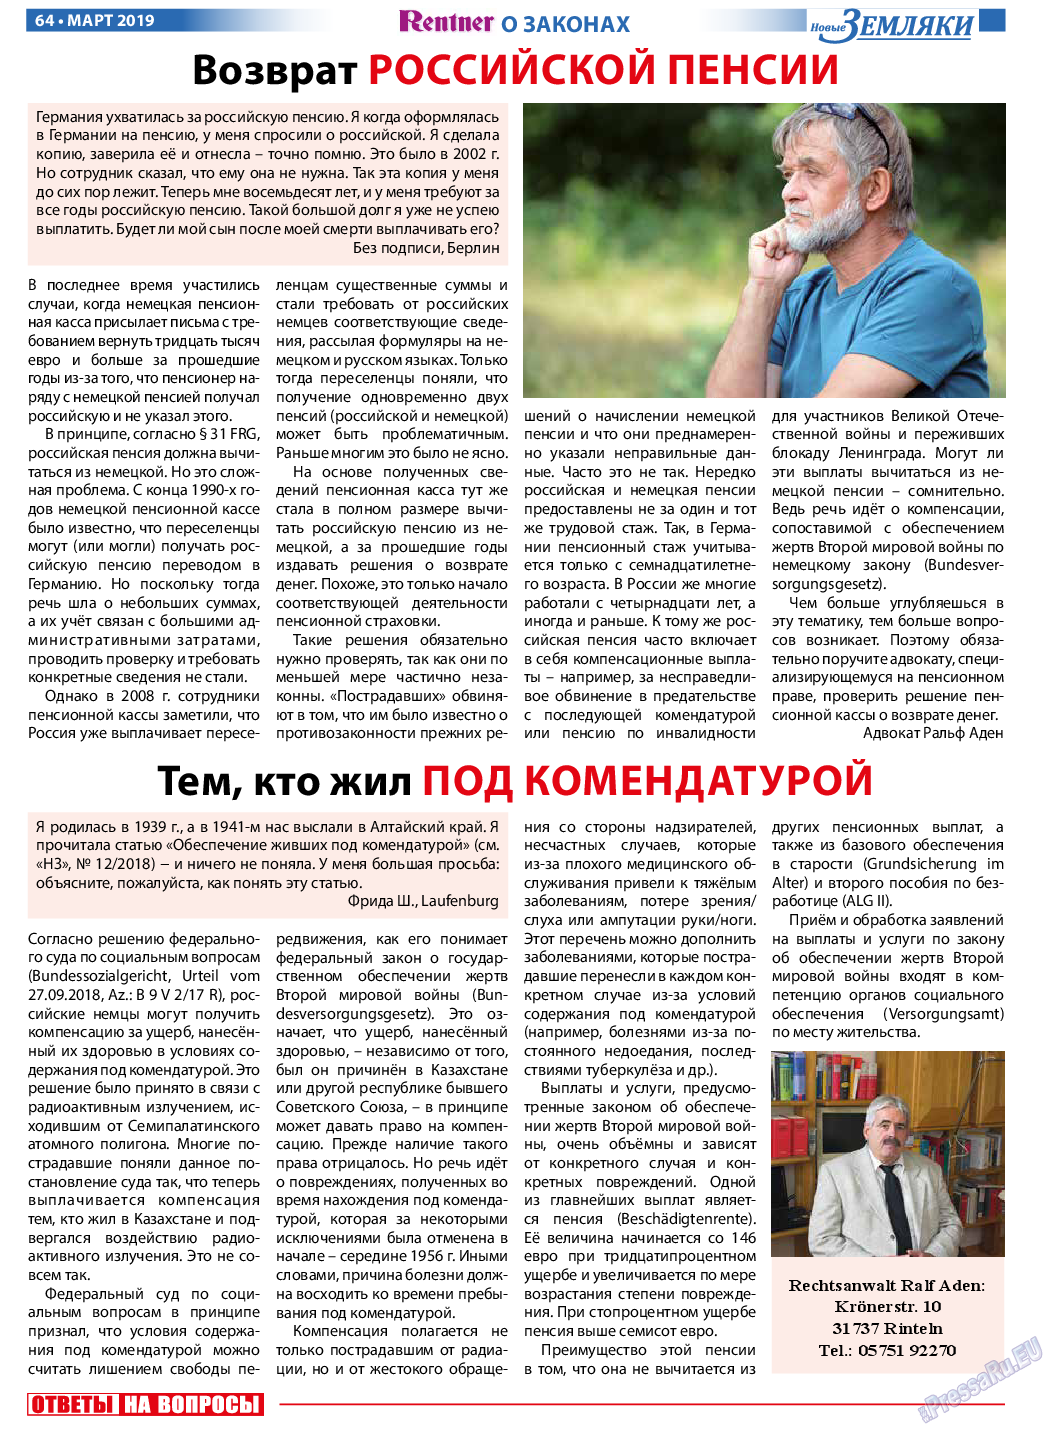 Новые Земляки, газета. 2019 №3 стр.64